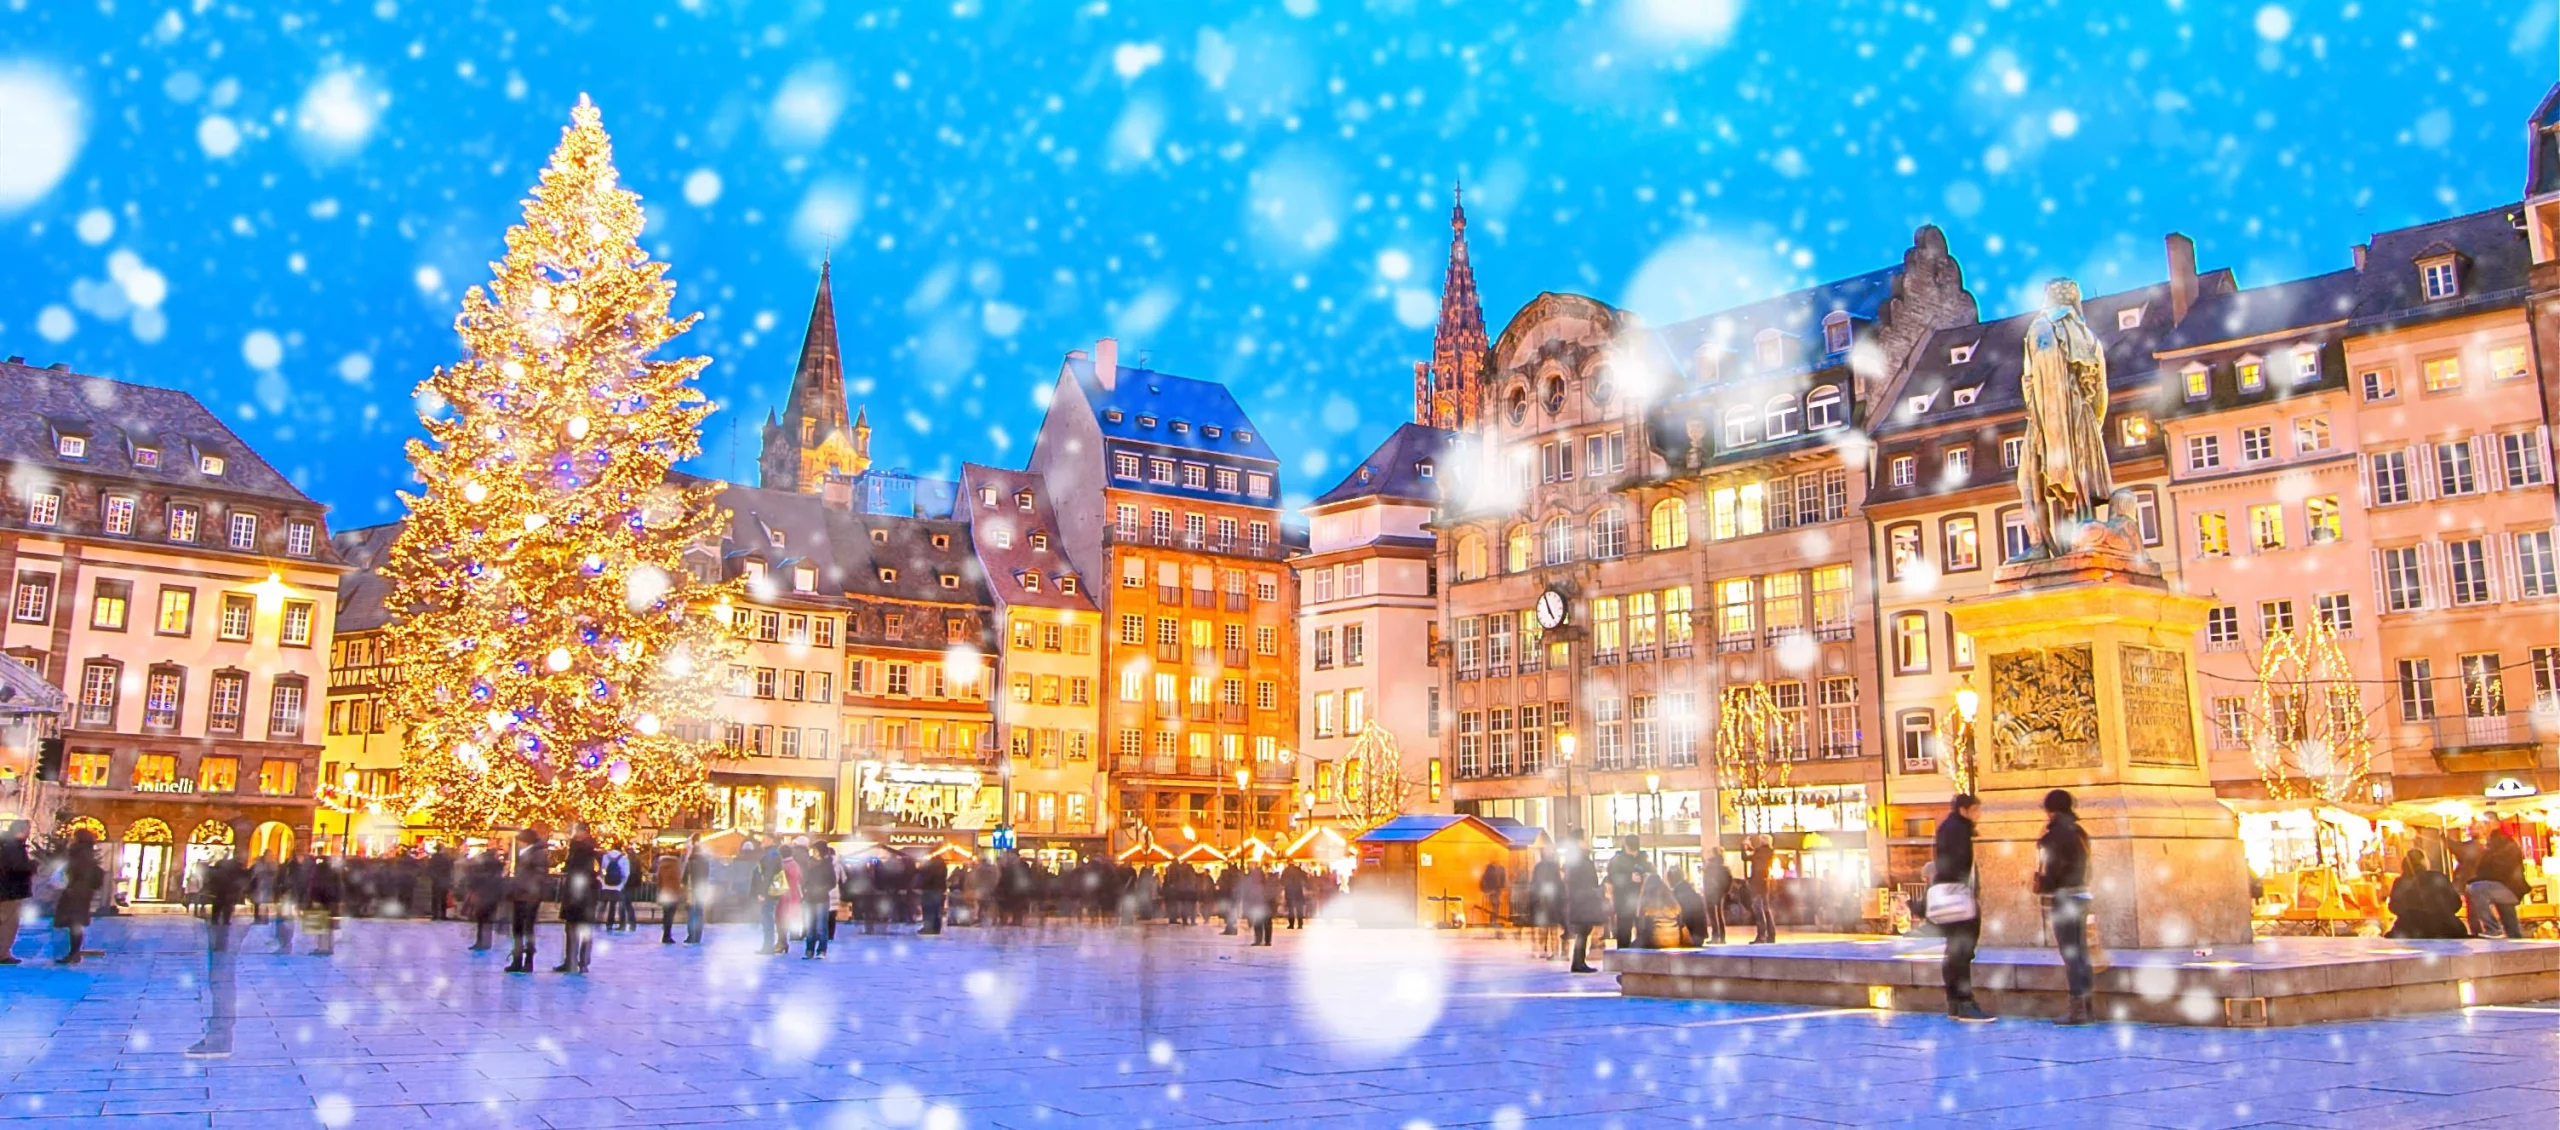 Marché de Noël à Strasbourg : comment éviter la foule ?